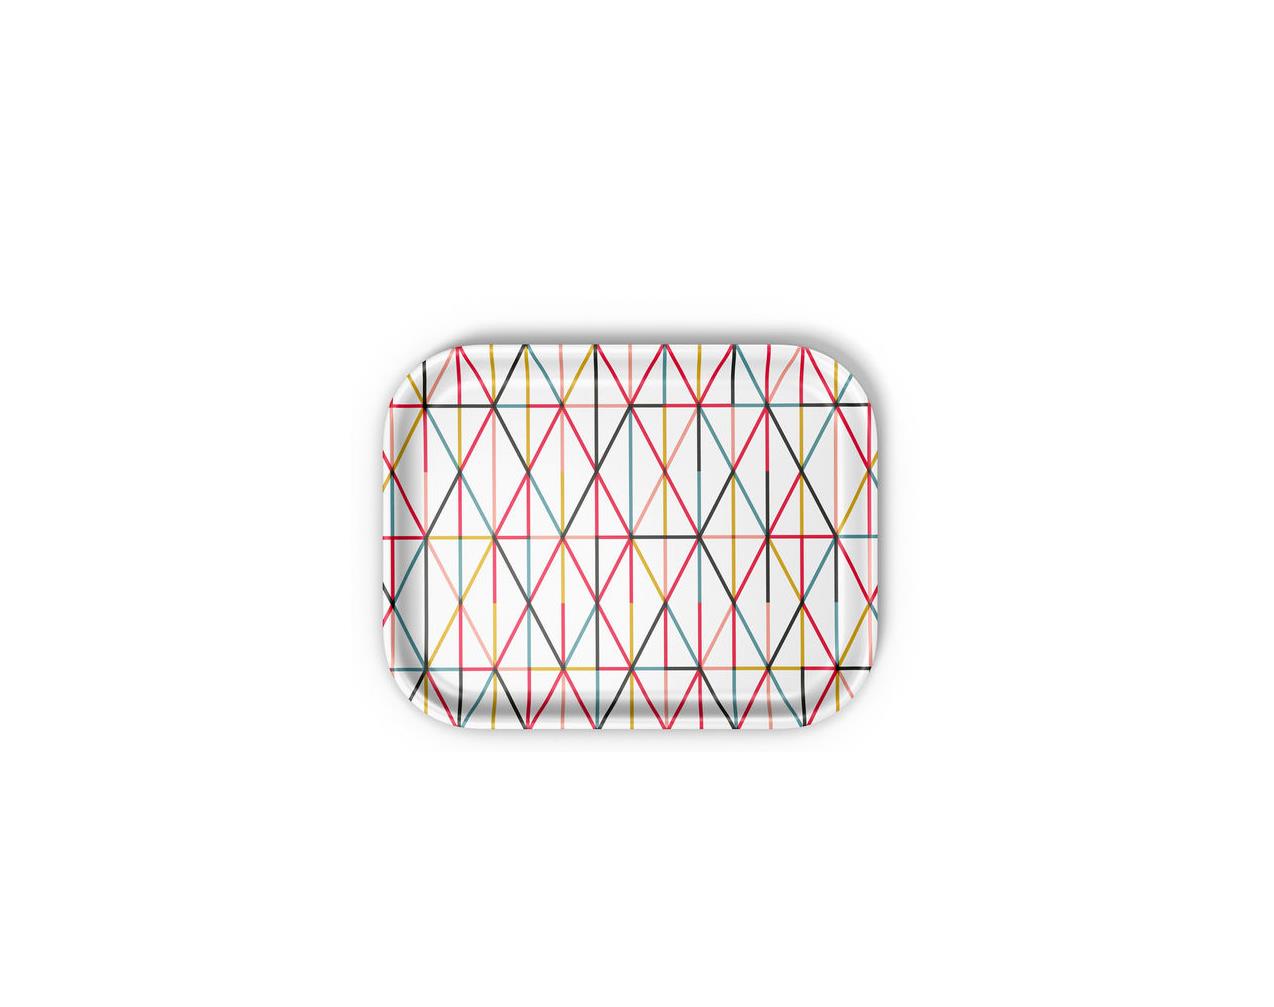 Classic-Trays-Grid-Multicolour-Medium